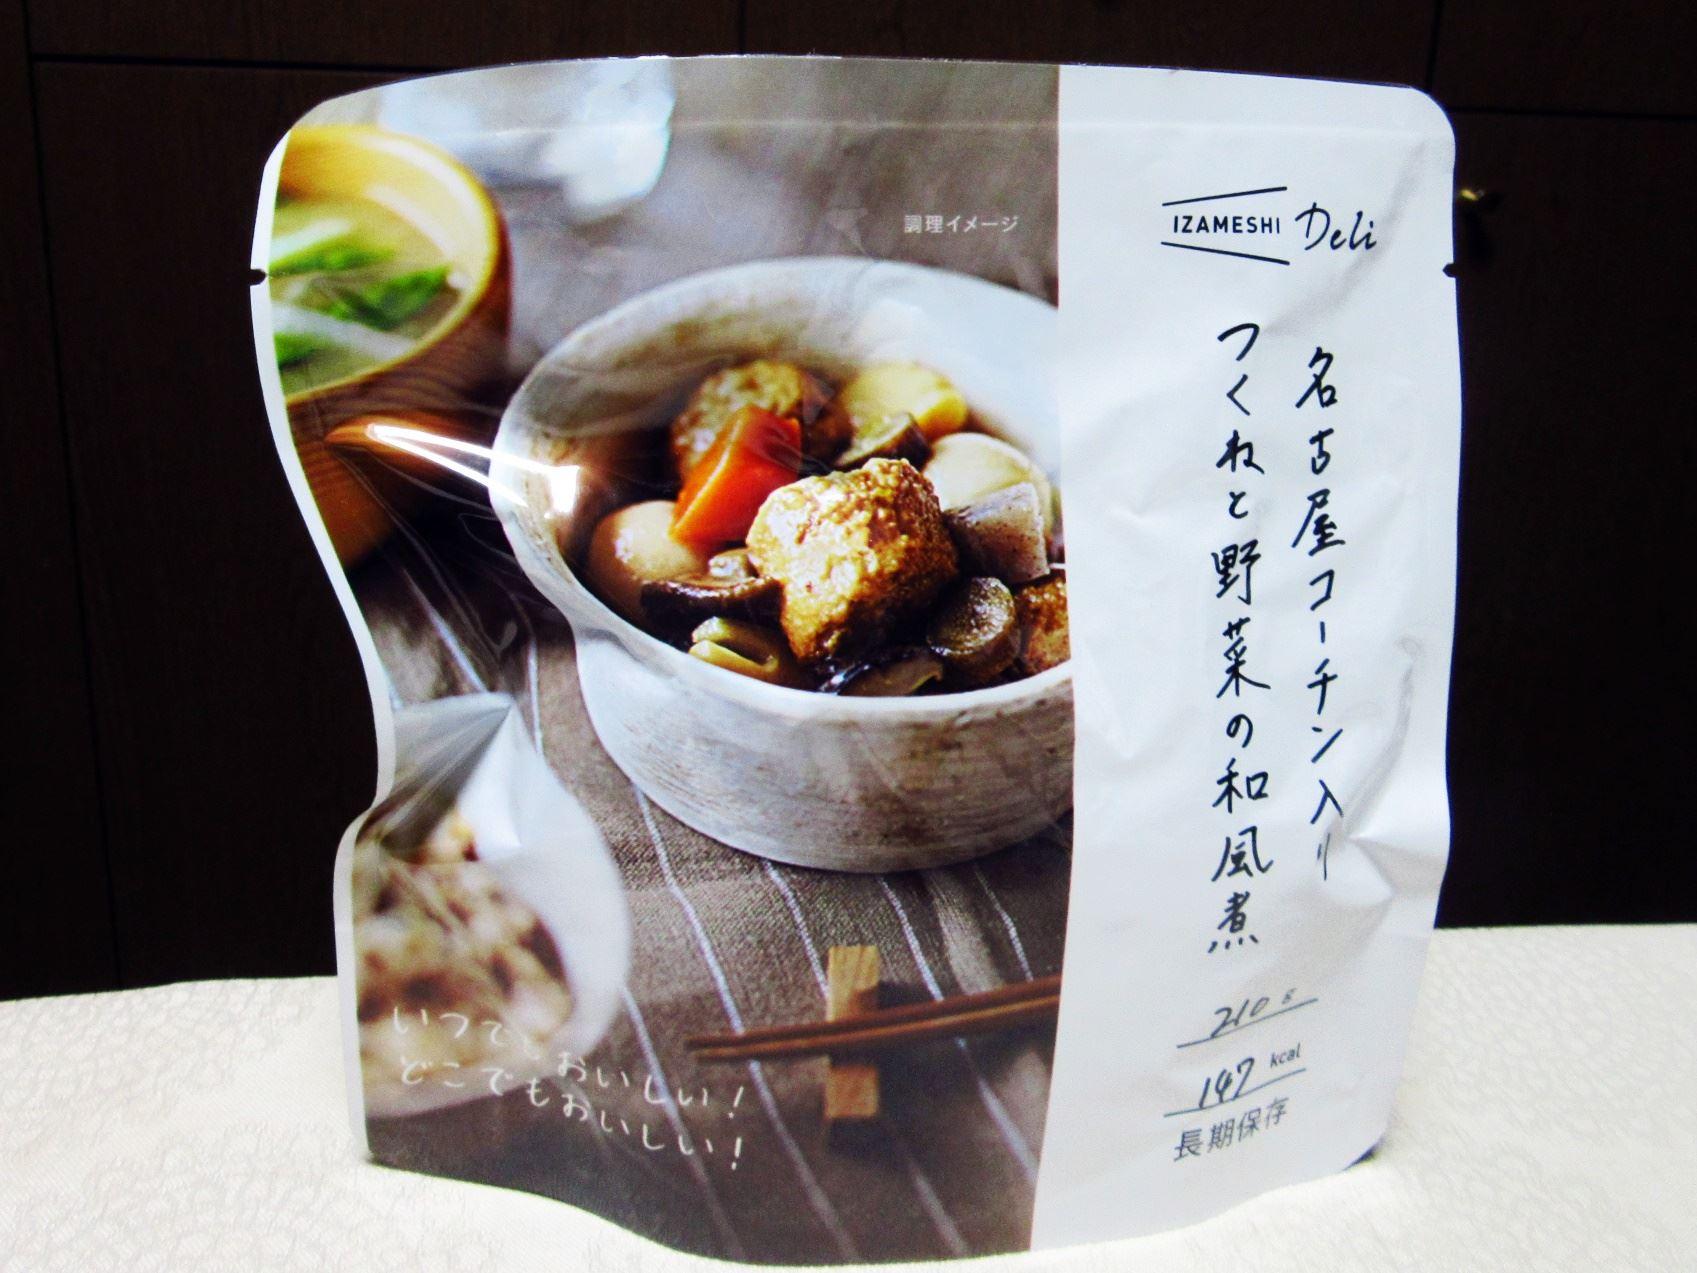 第一回「日本災害食大賞」美味しさ部門1位 グランプリ「IZAMESHI Deli 名古屋コーチン入りつくねと野菜の和風煮」